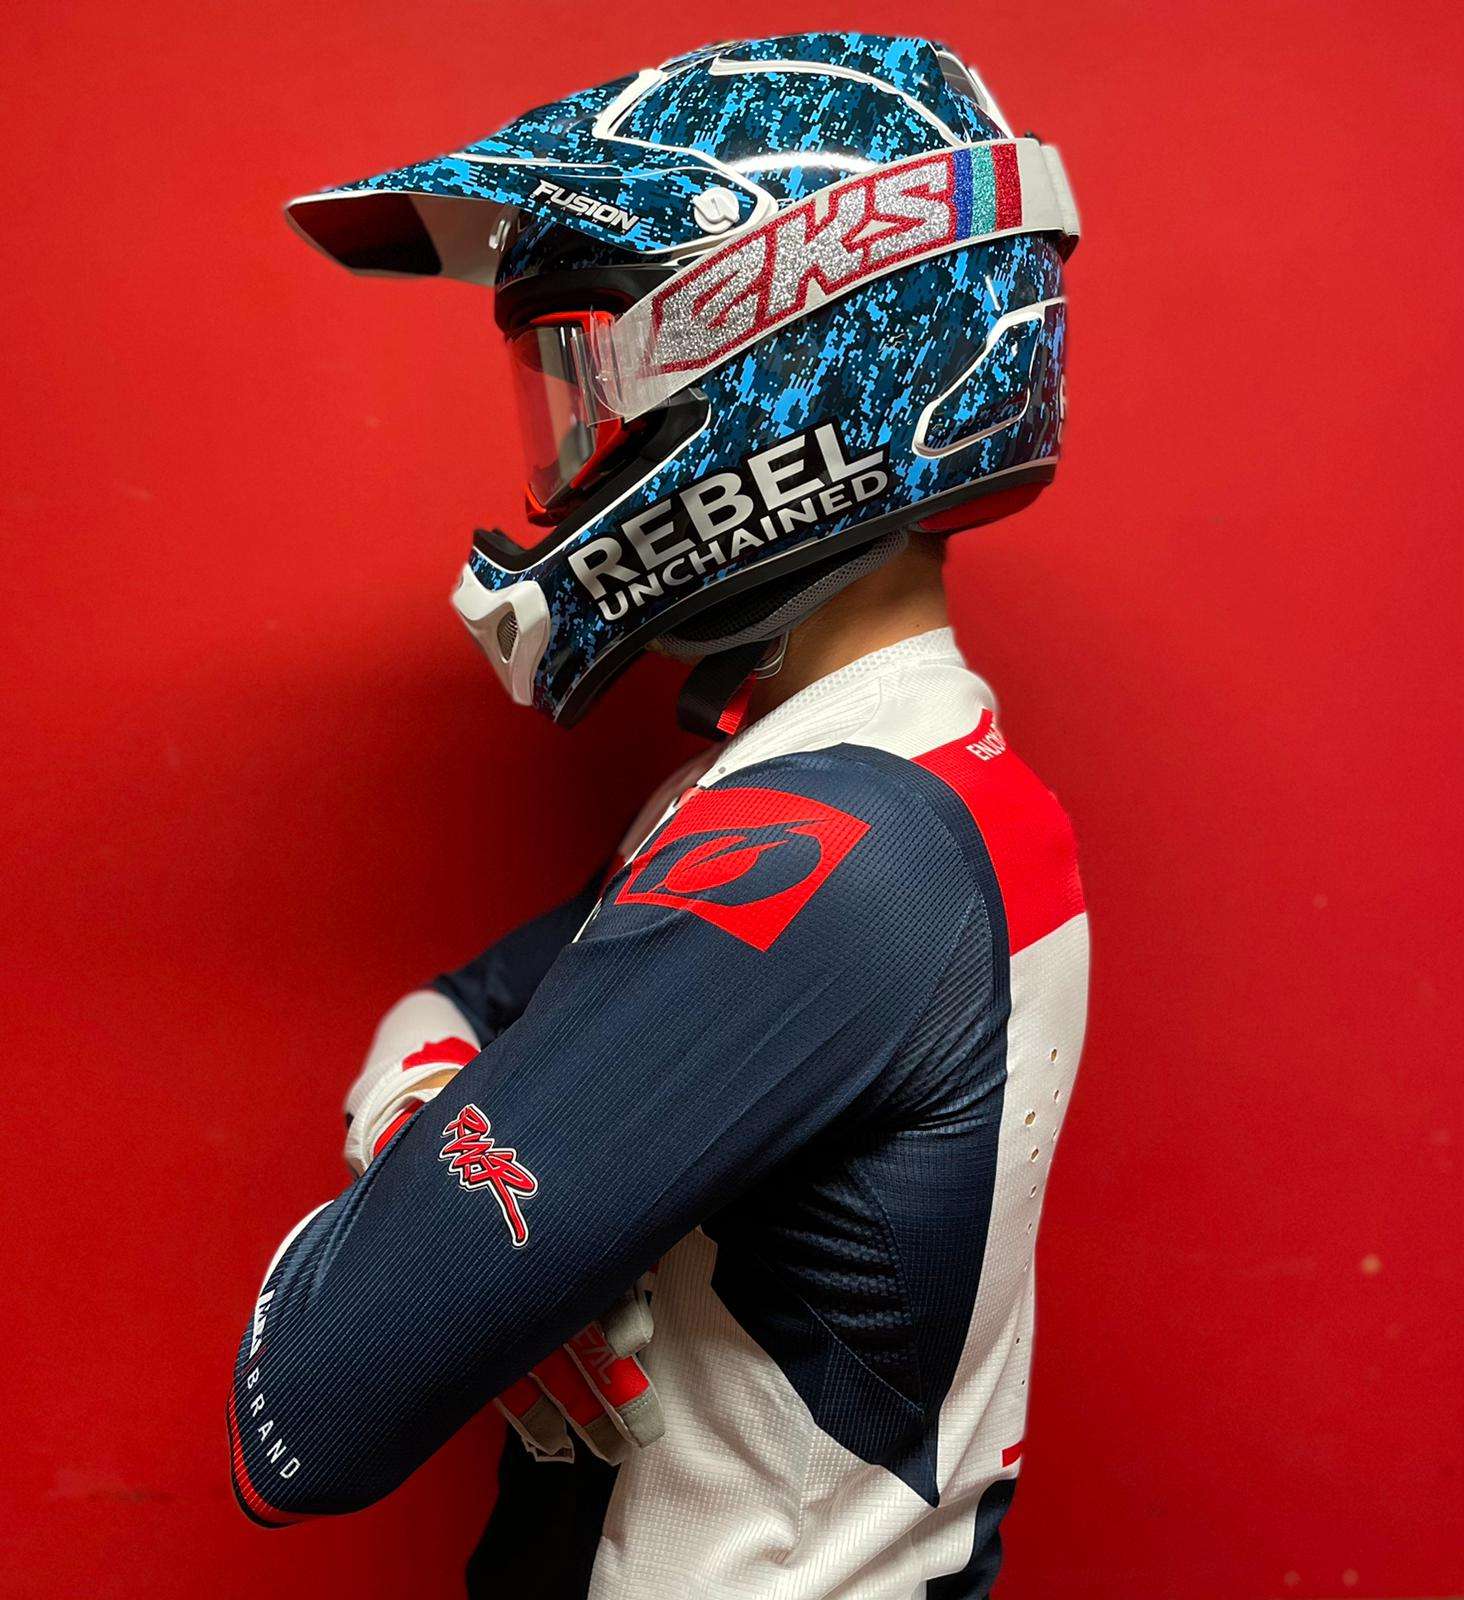 Rebel Snus Sponsorship With US Supercross Racer Ryan Breece